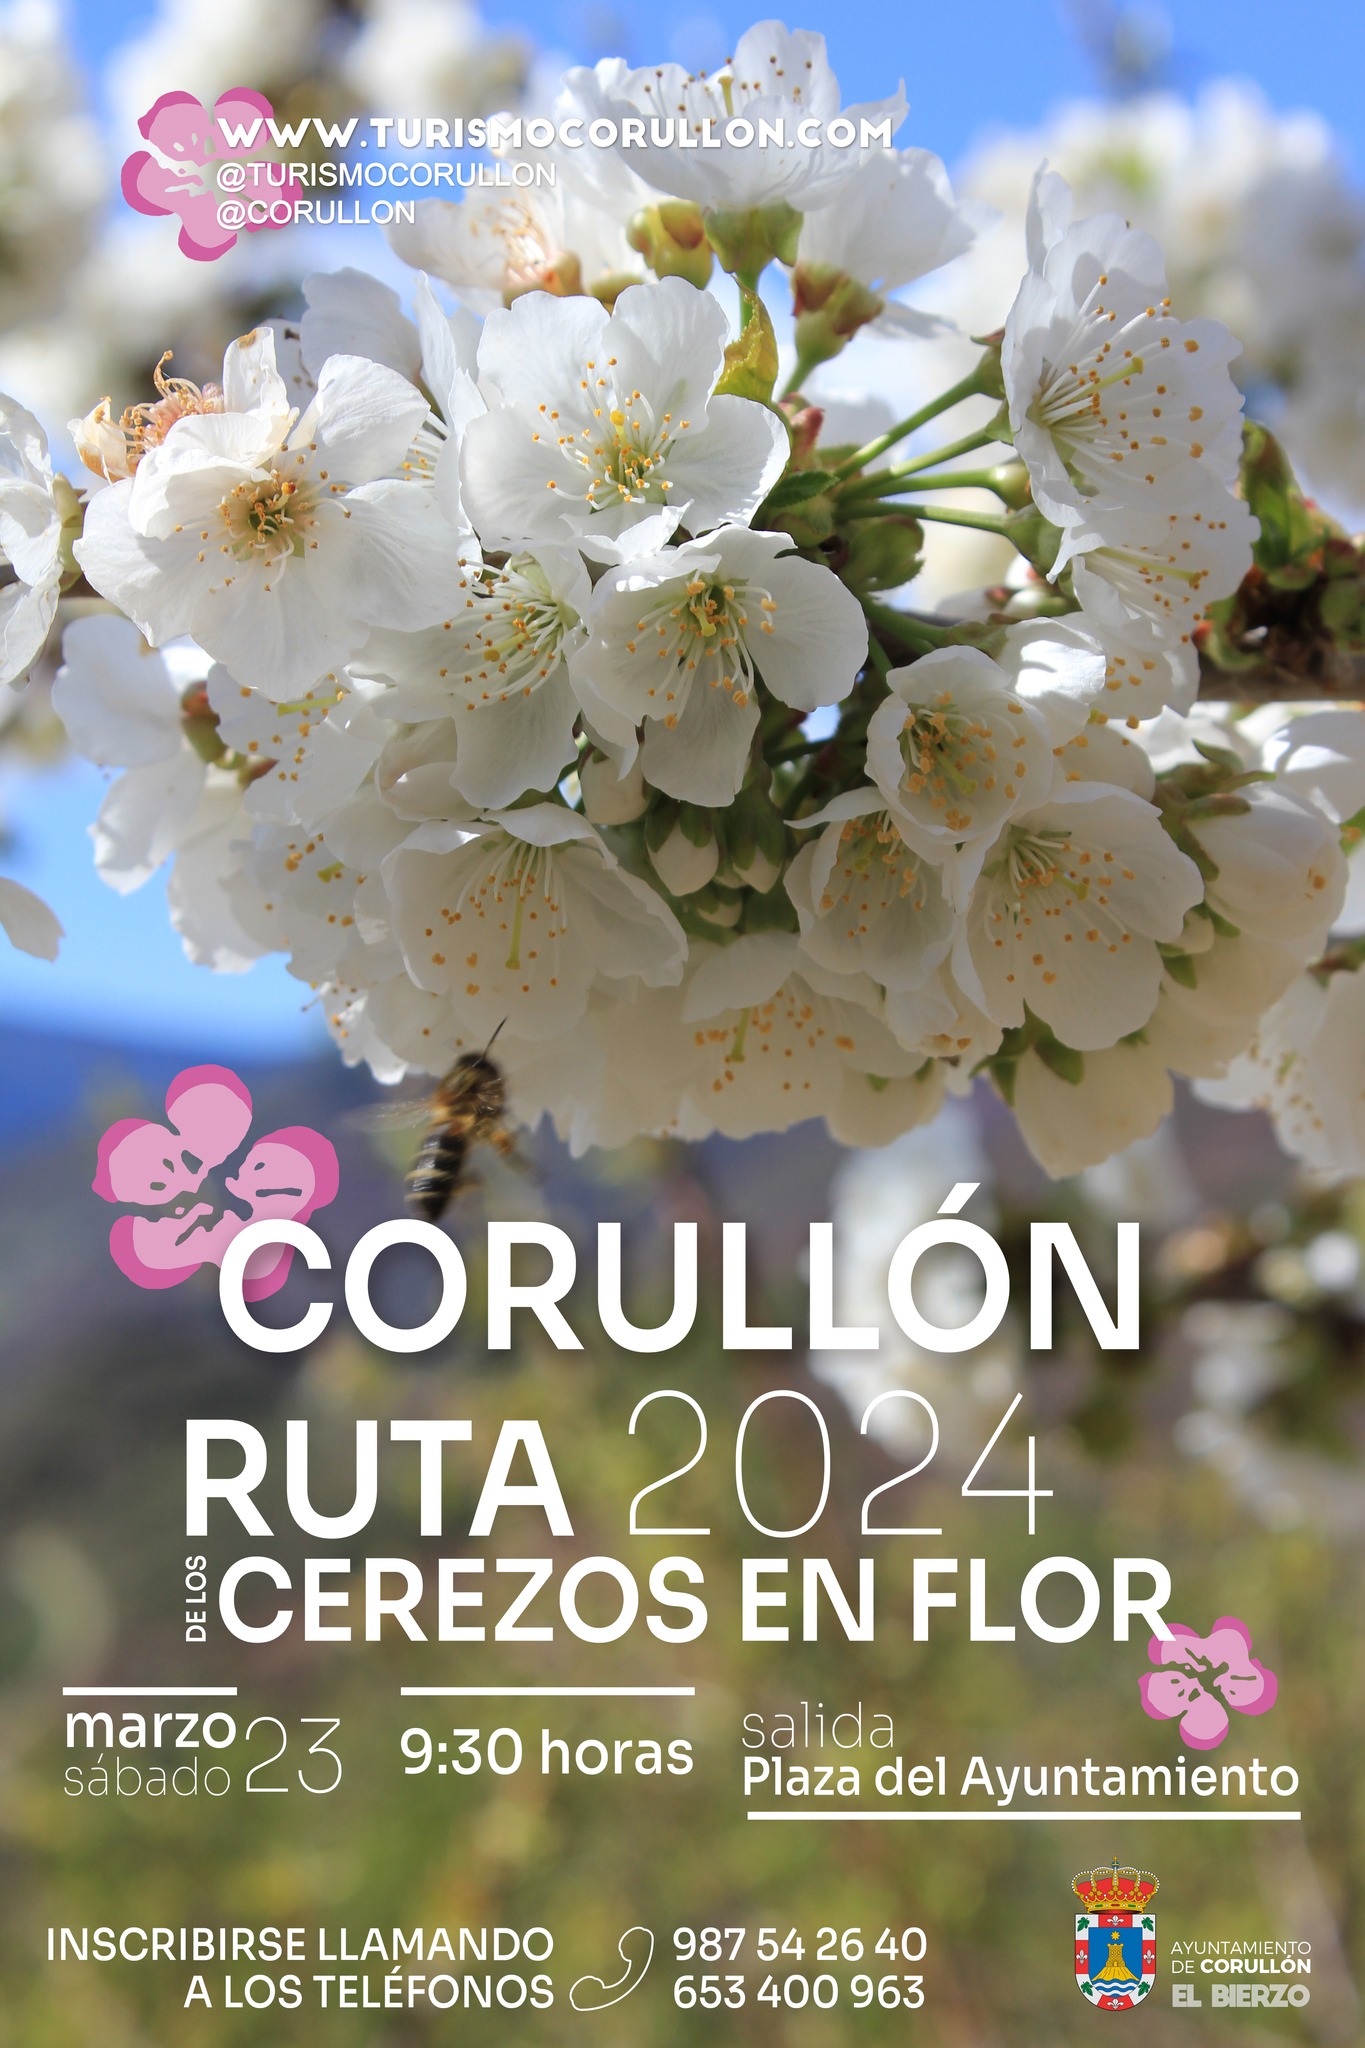 Corullón organiza el sábado una ruta para disfrutar la floración de los cerezos 15